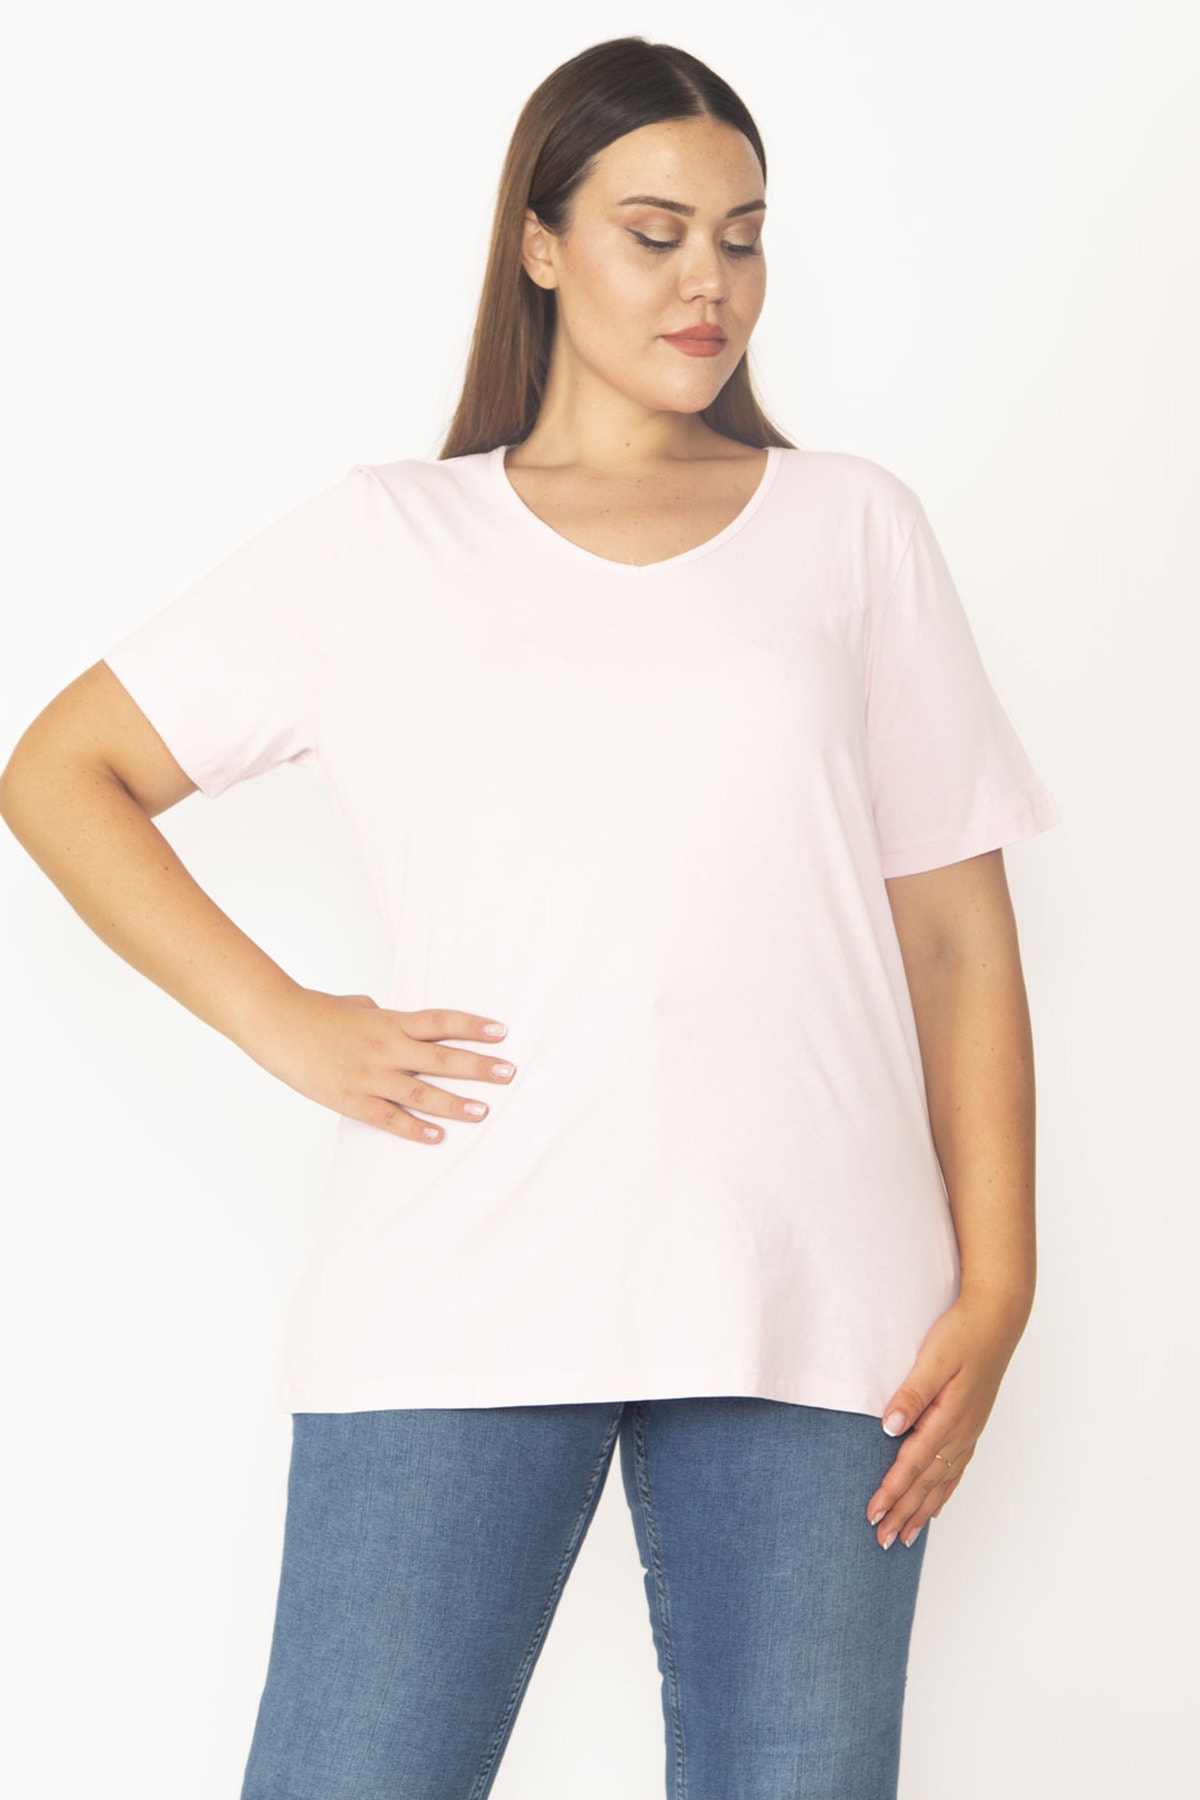 Şans Women's Plus Size Pink V-Neck Oversize Basic T-Shirt